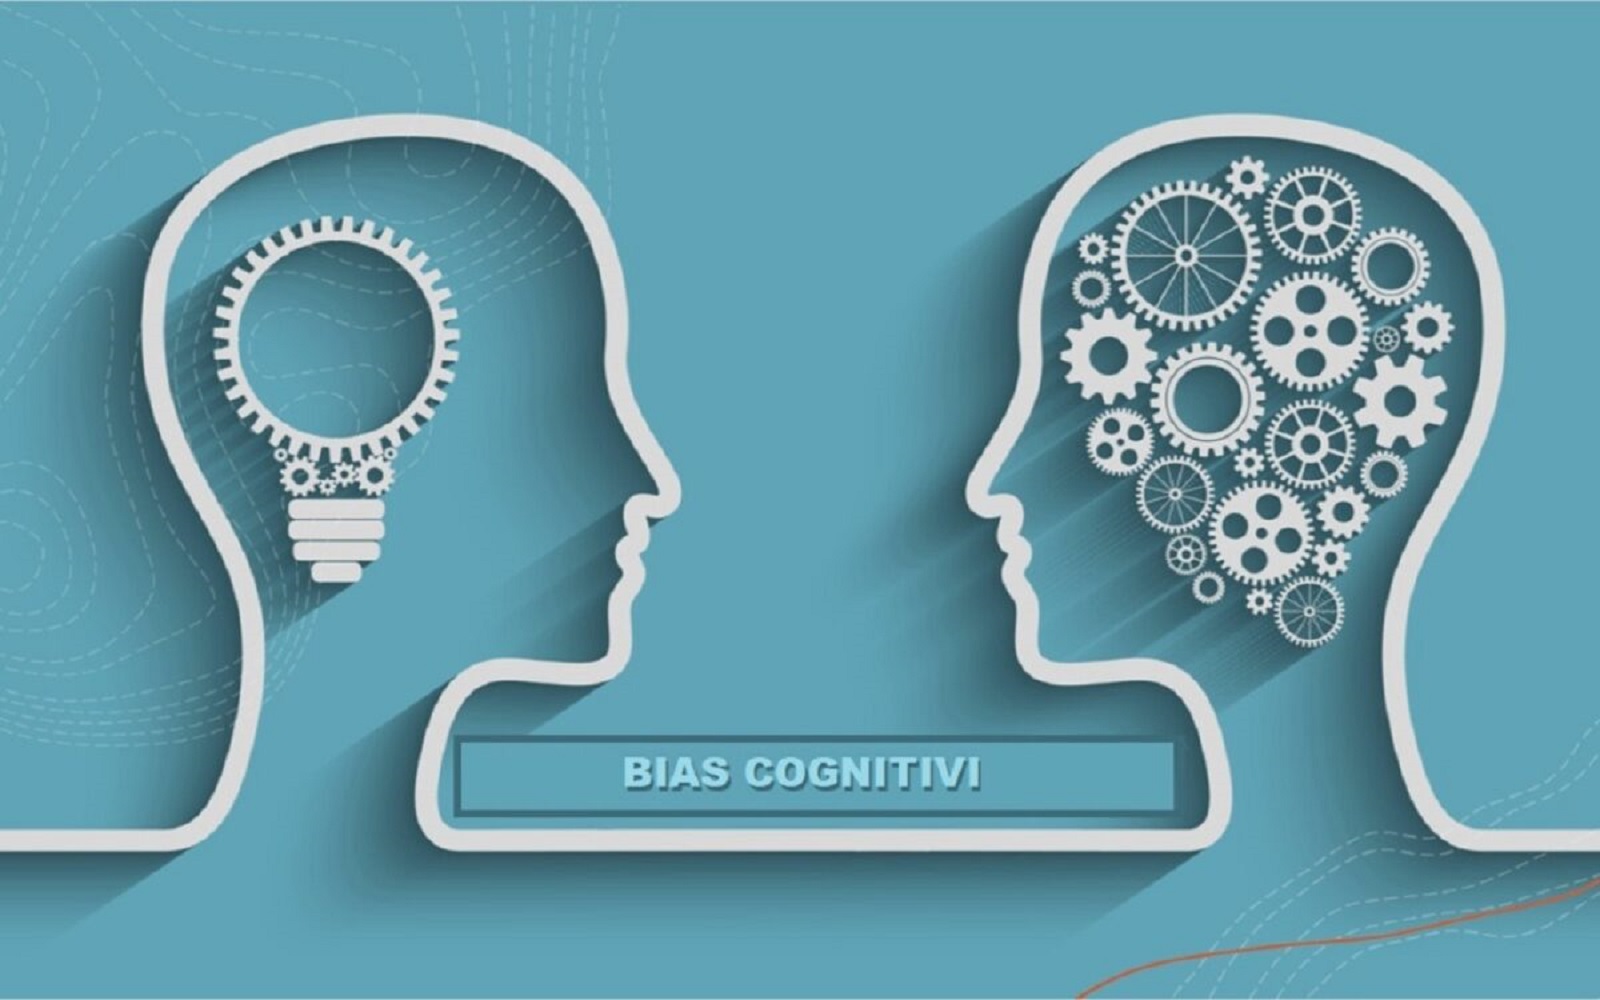 bias cognitivi